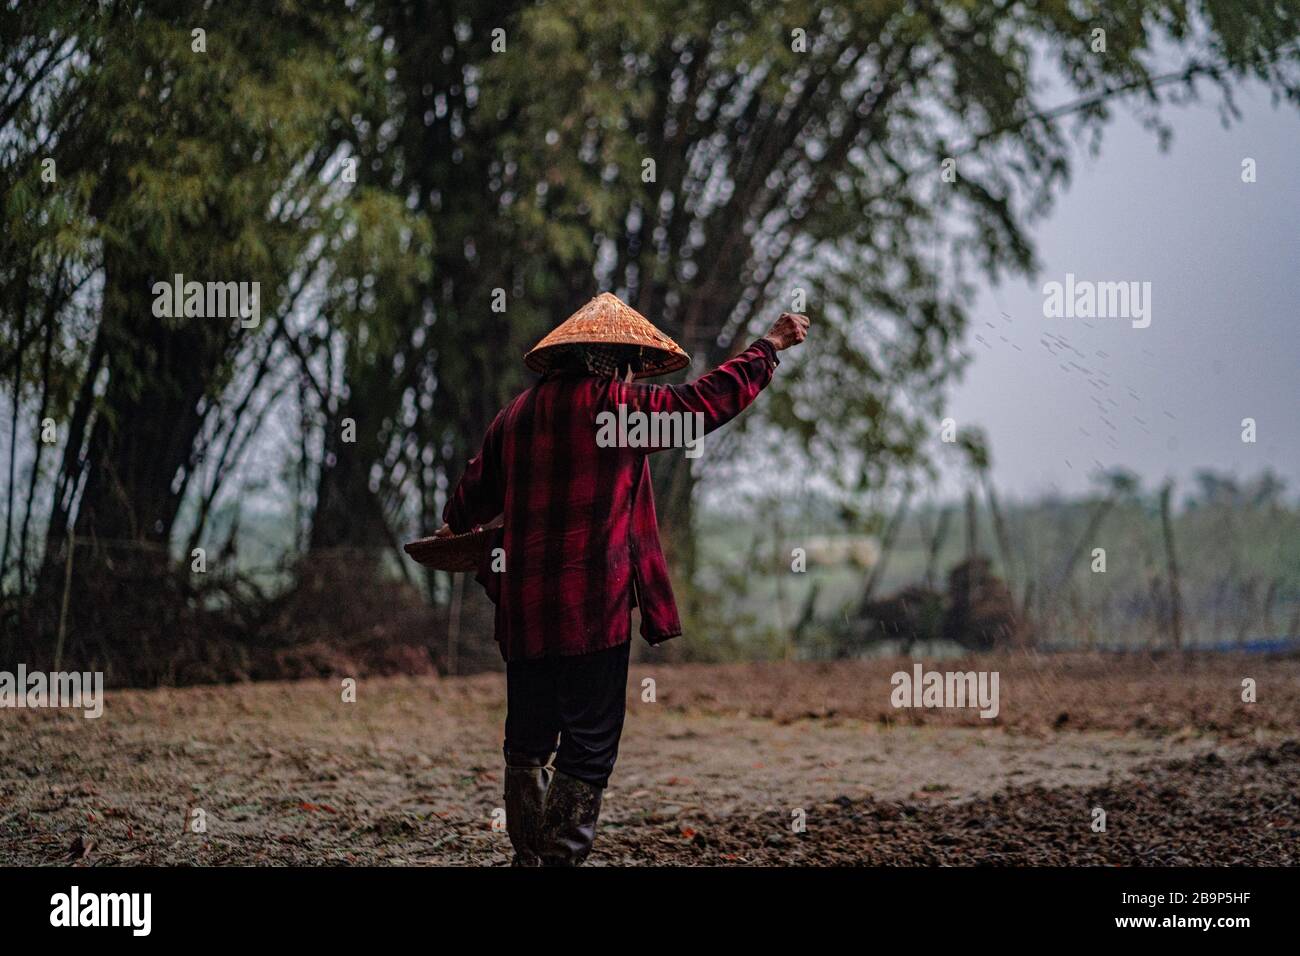 Ein vietnamesischer Bauer in asiatischen konischen Hüten streut die Samen zur Ernte. Ein landwirtschaftliches Foto aus den Dörfern Vietnams. Stockfoto